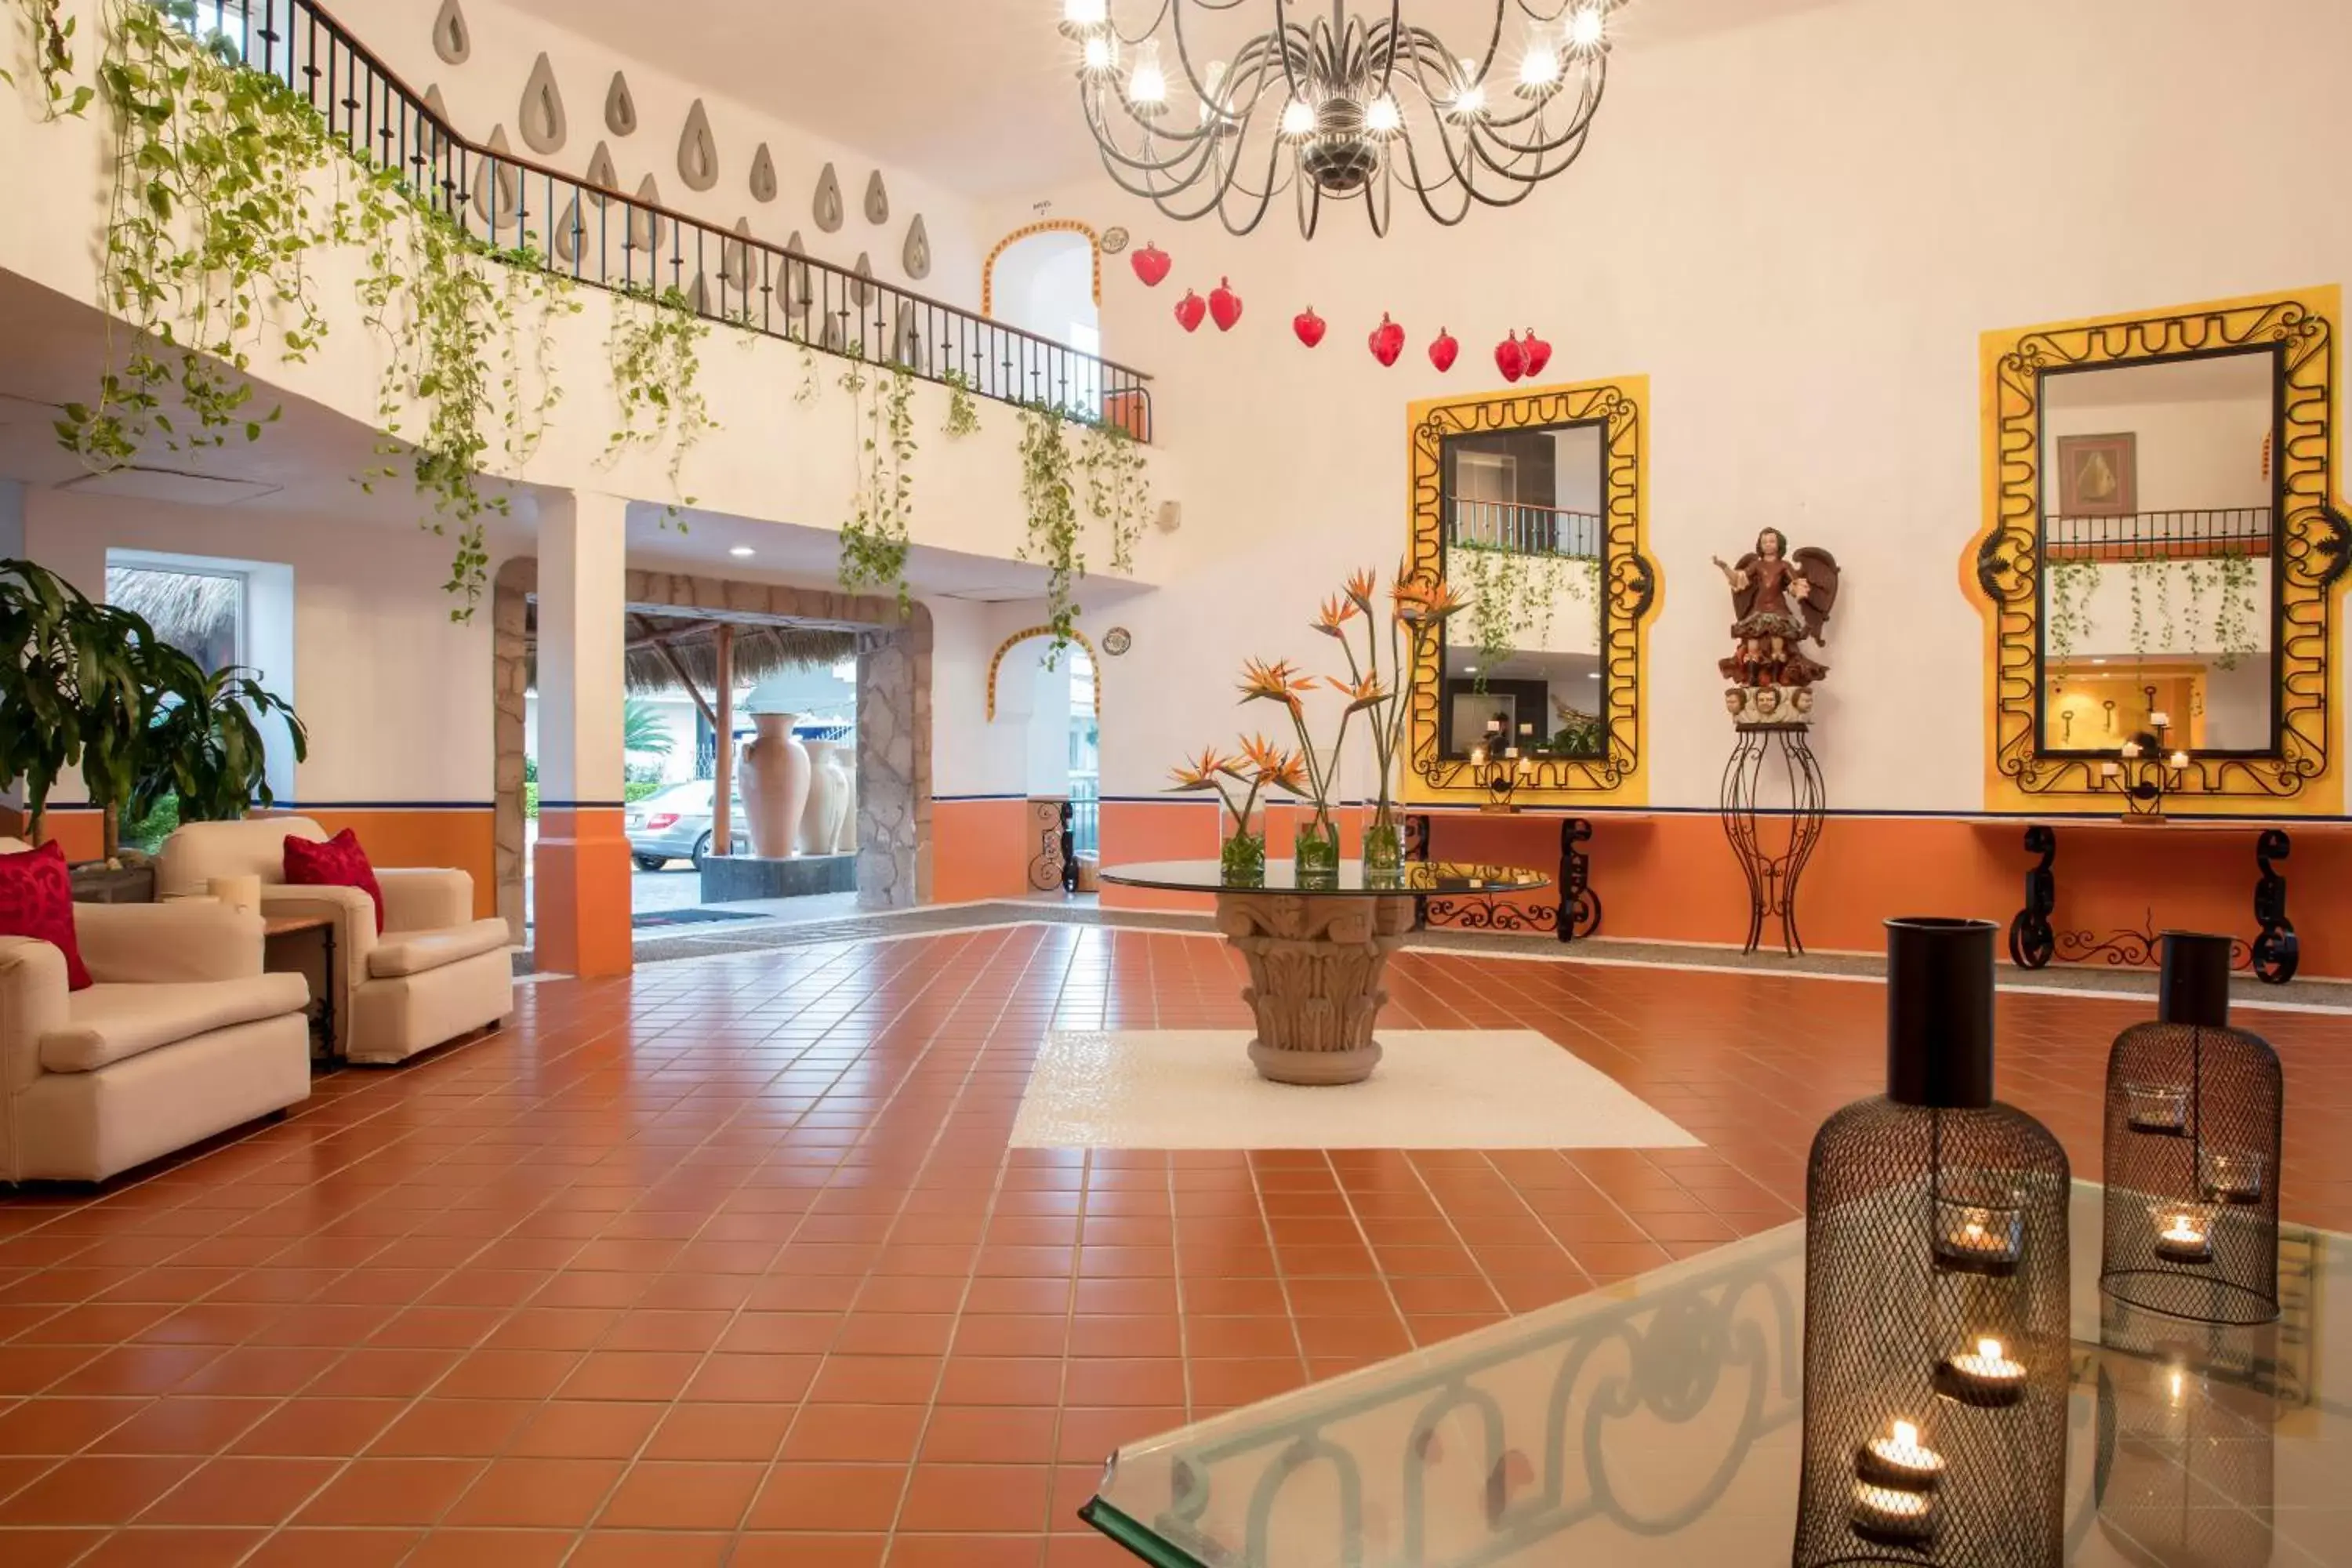 Lobby or reception, Lobby/Reception in Flamingo Vallarta Hotel & Marina